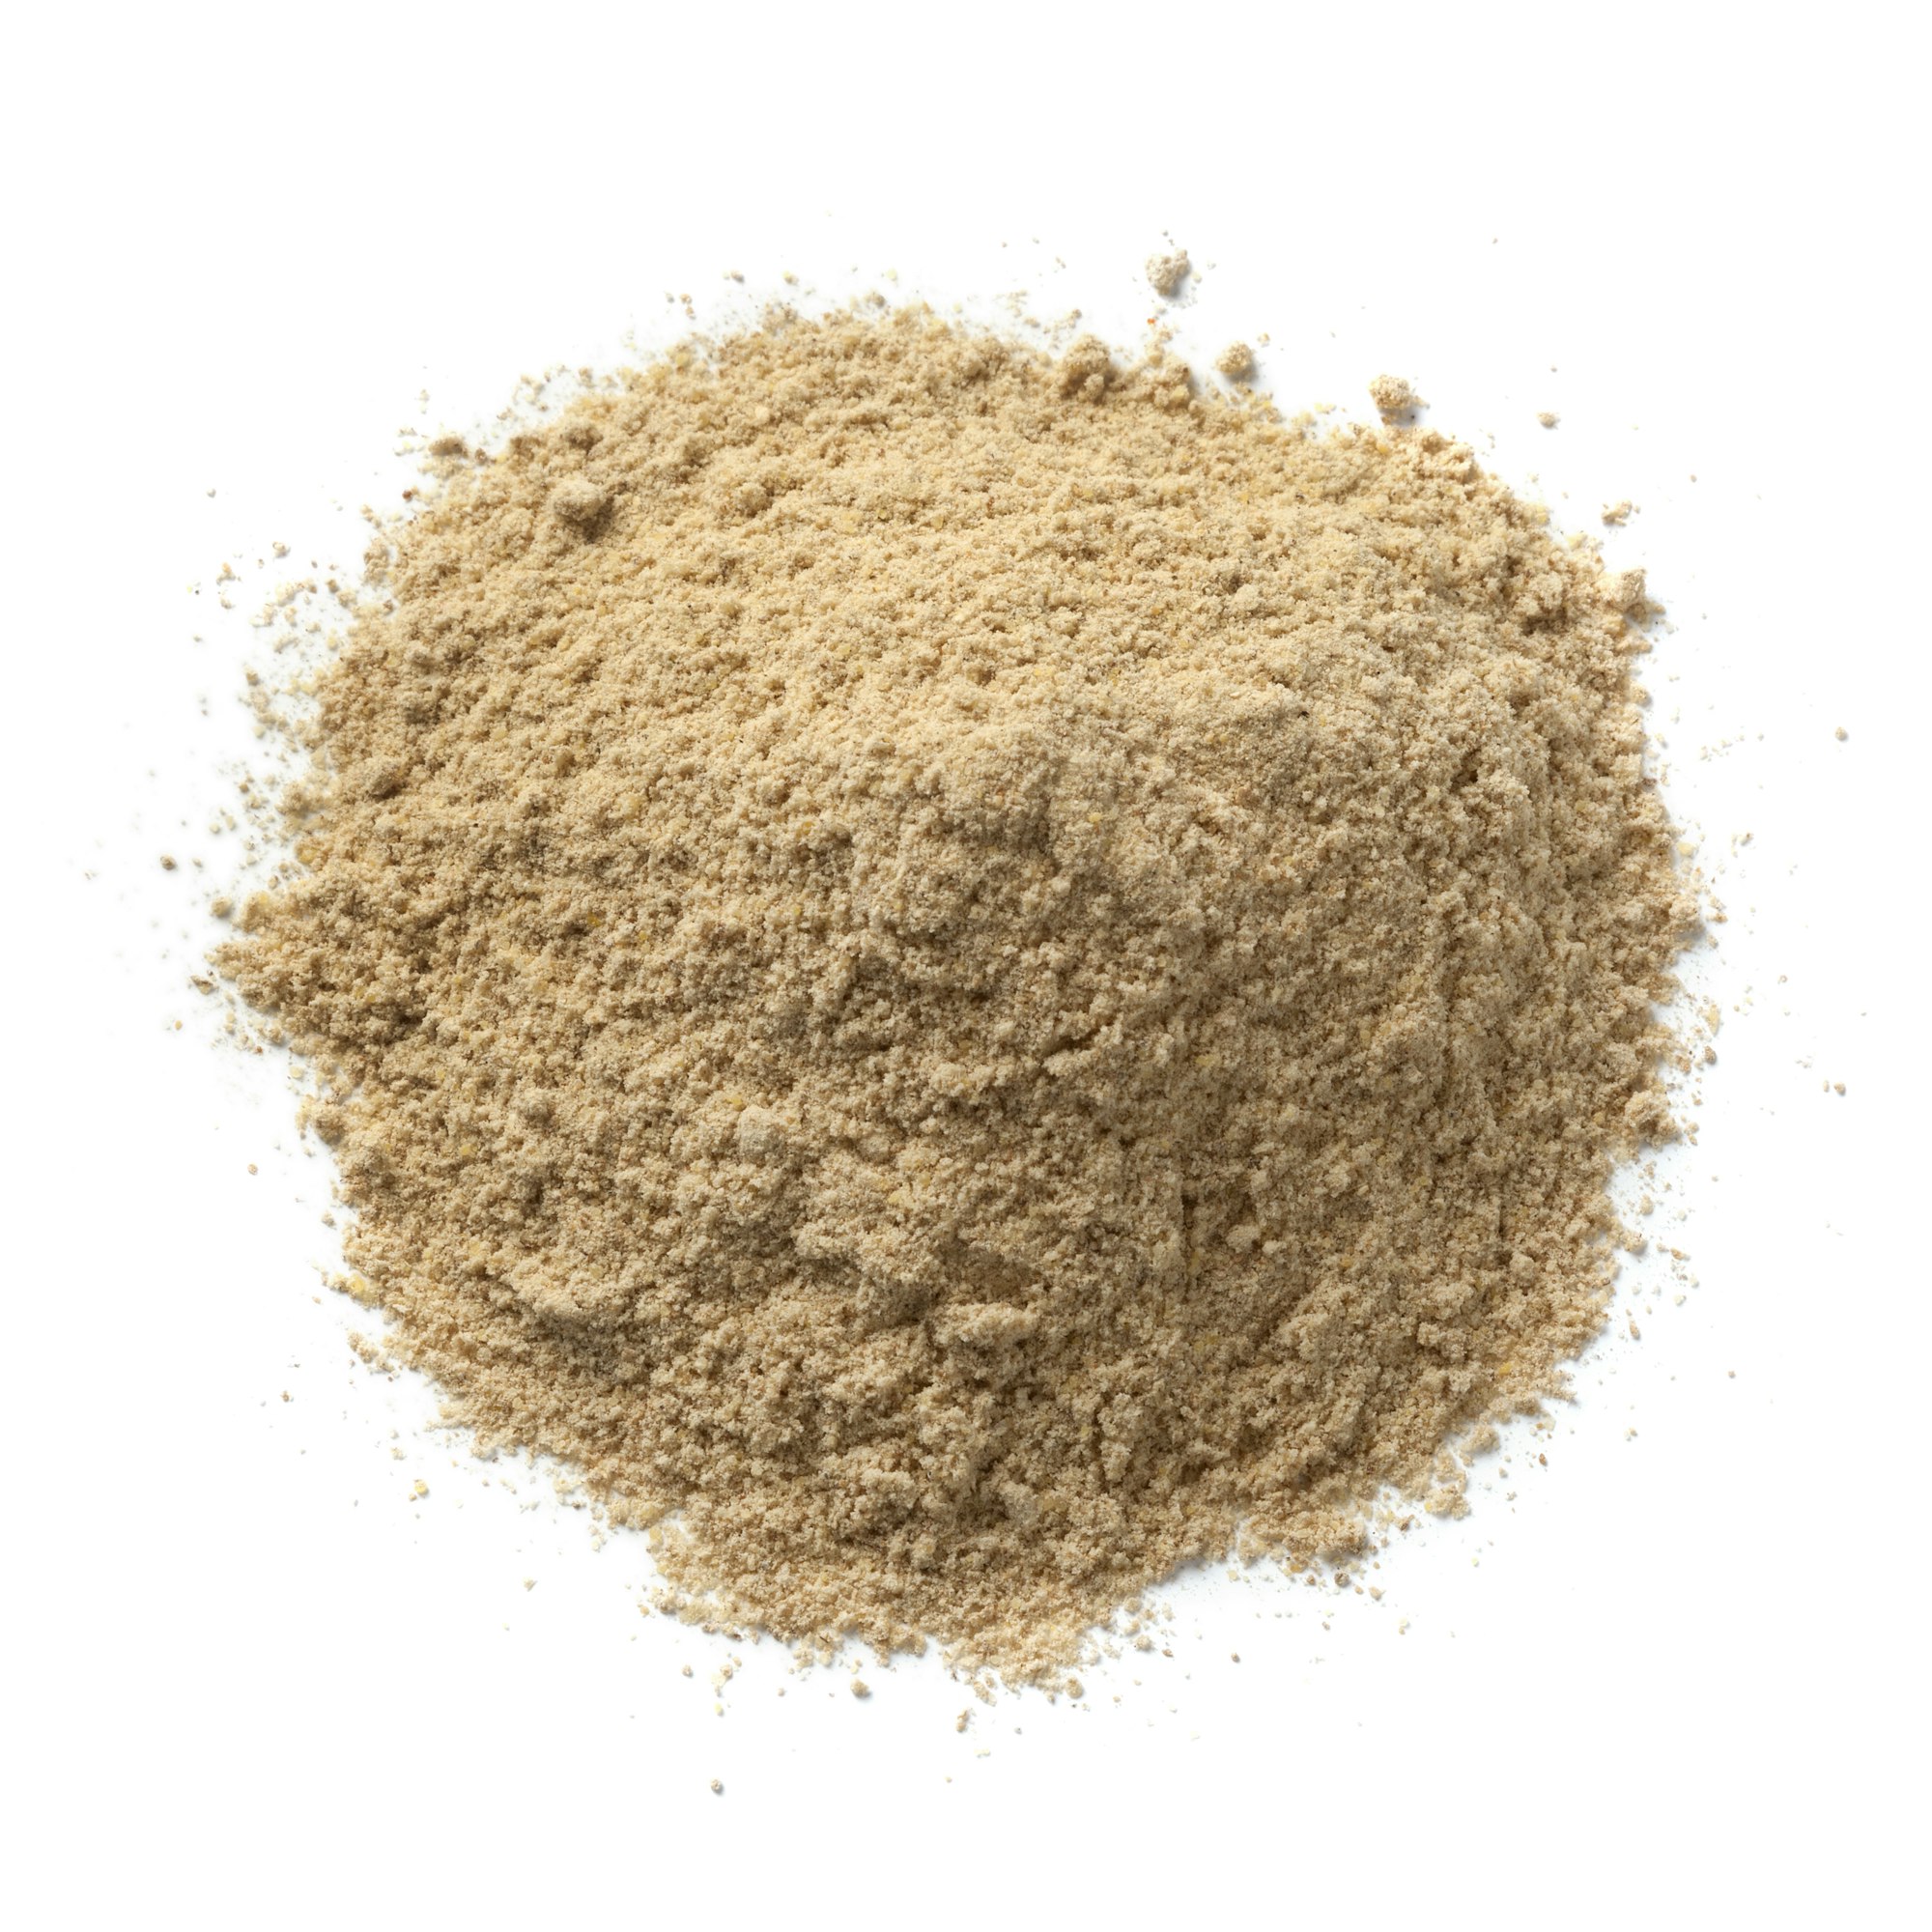 Heap of ground kencur powder